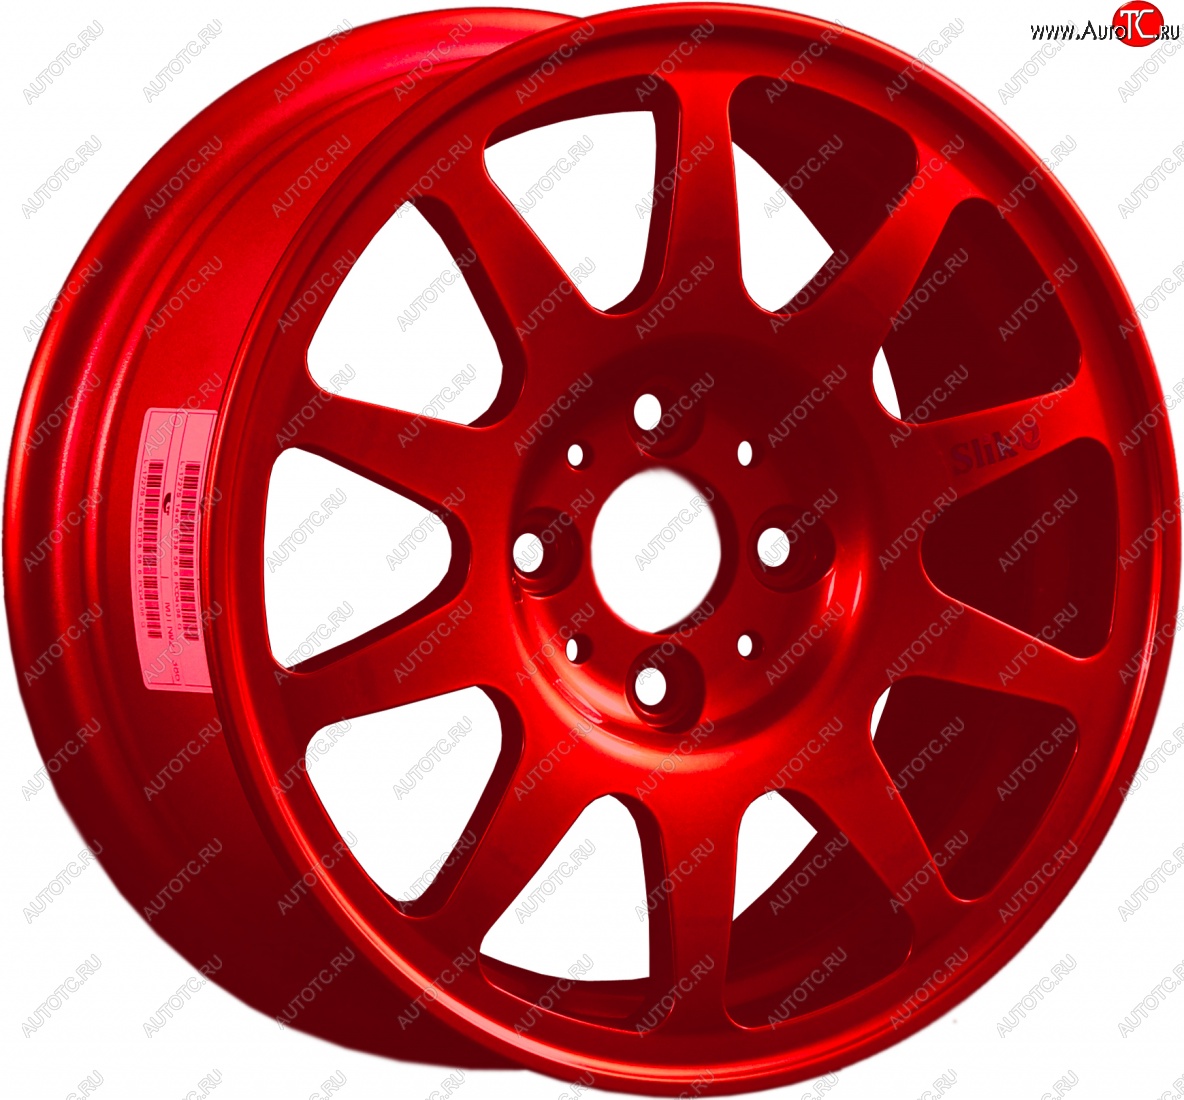 13 499 р. Кованый диск Slik Classic Sport L-1727S 6.0x14   (Красный (RED))